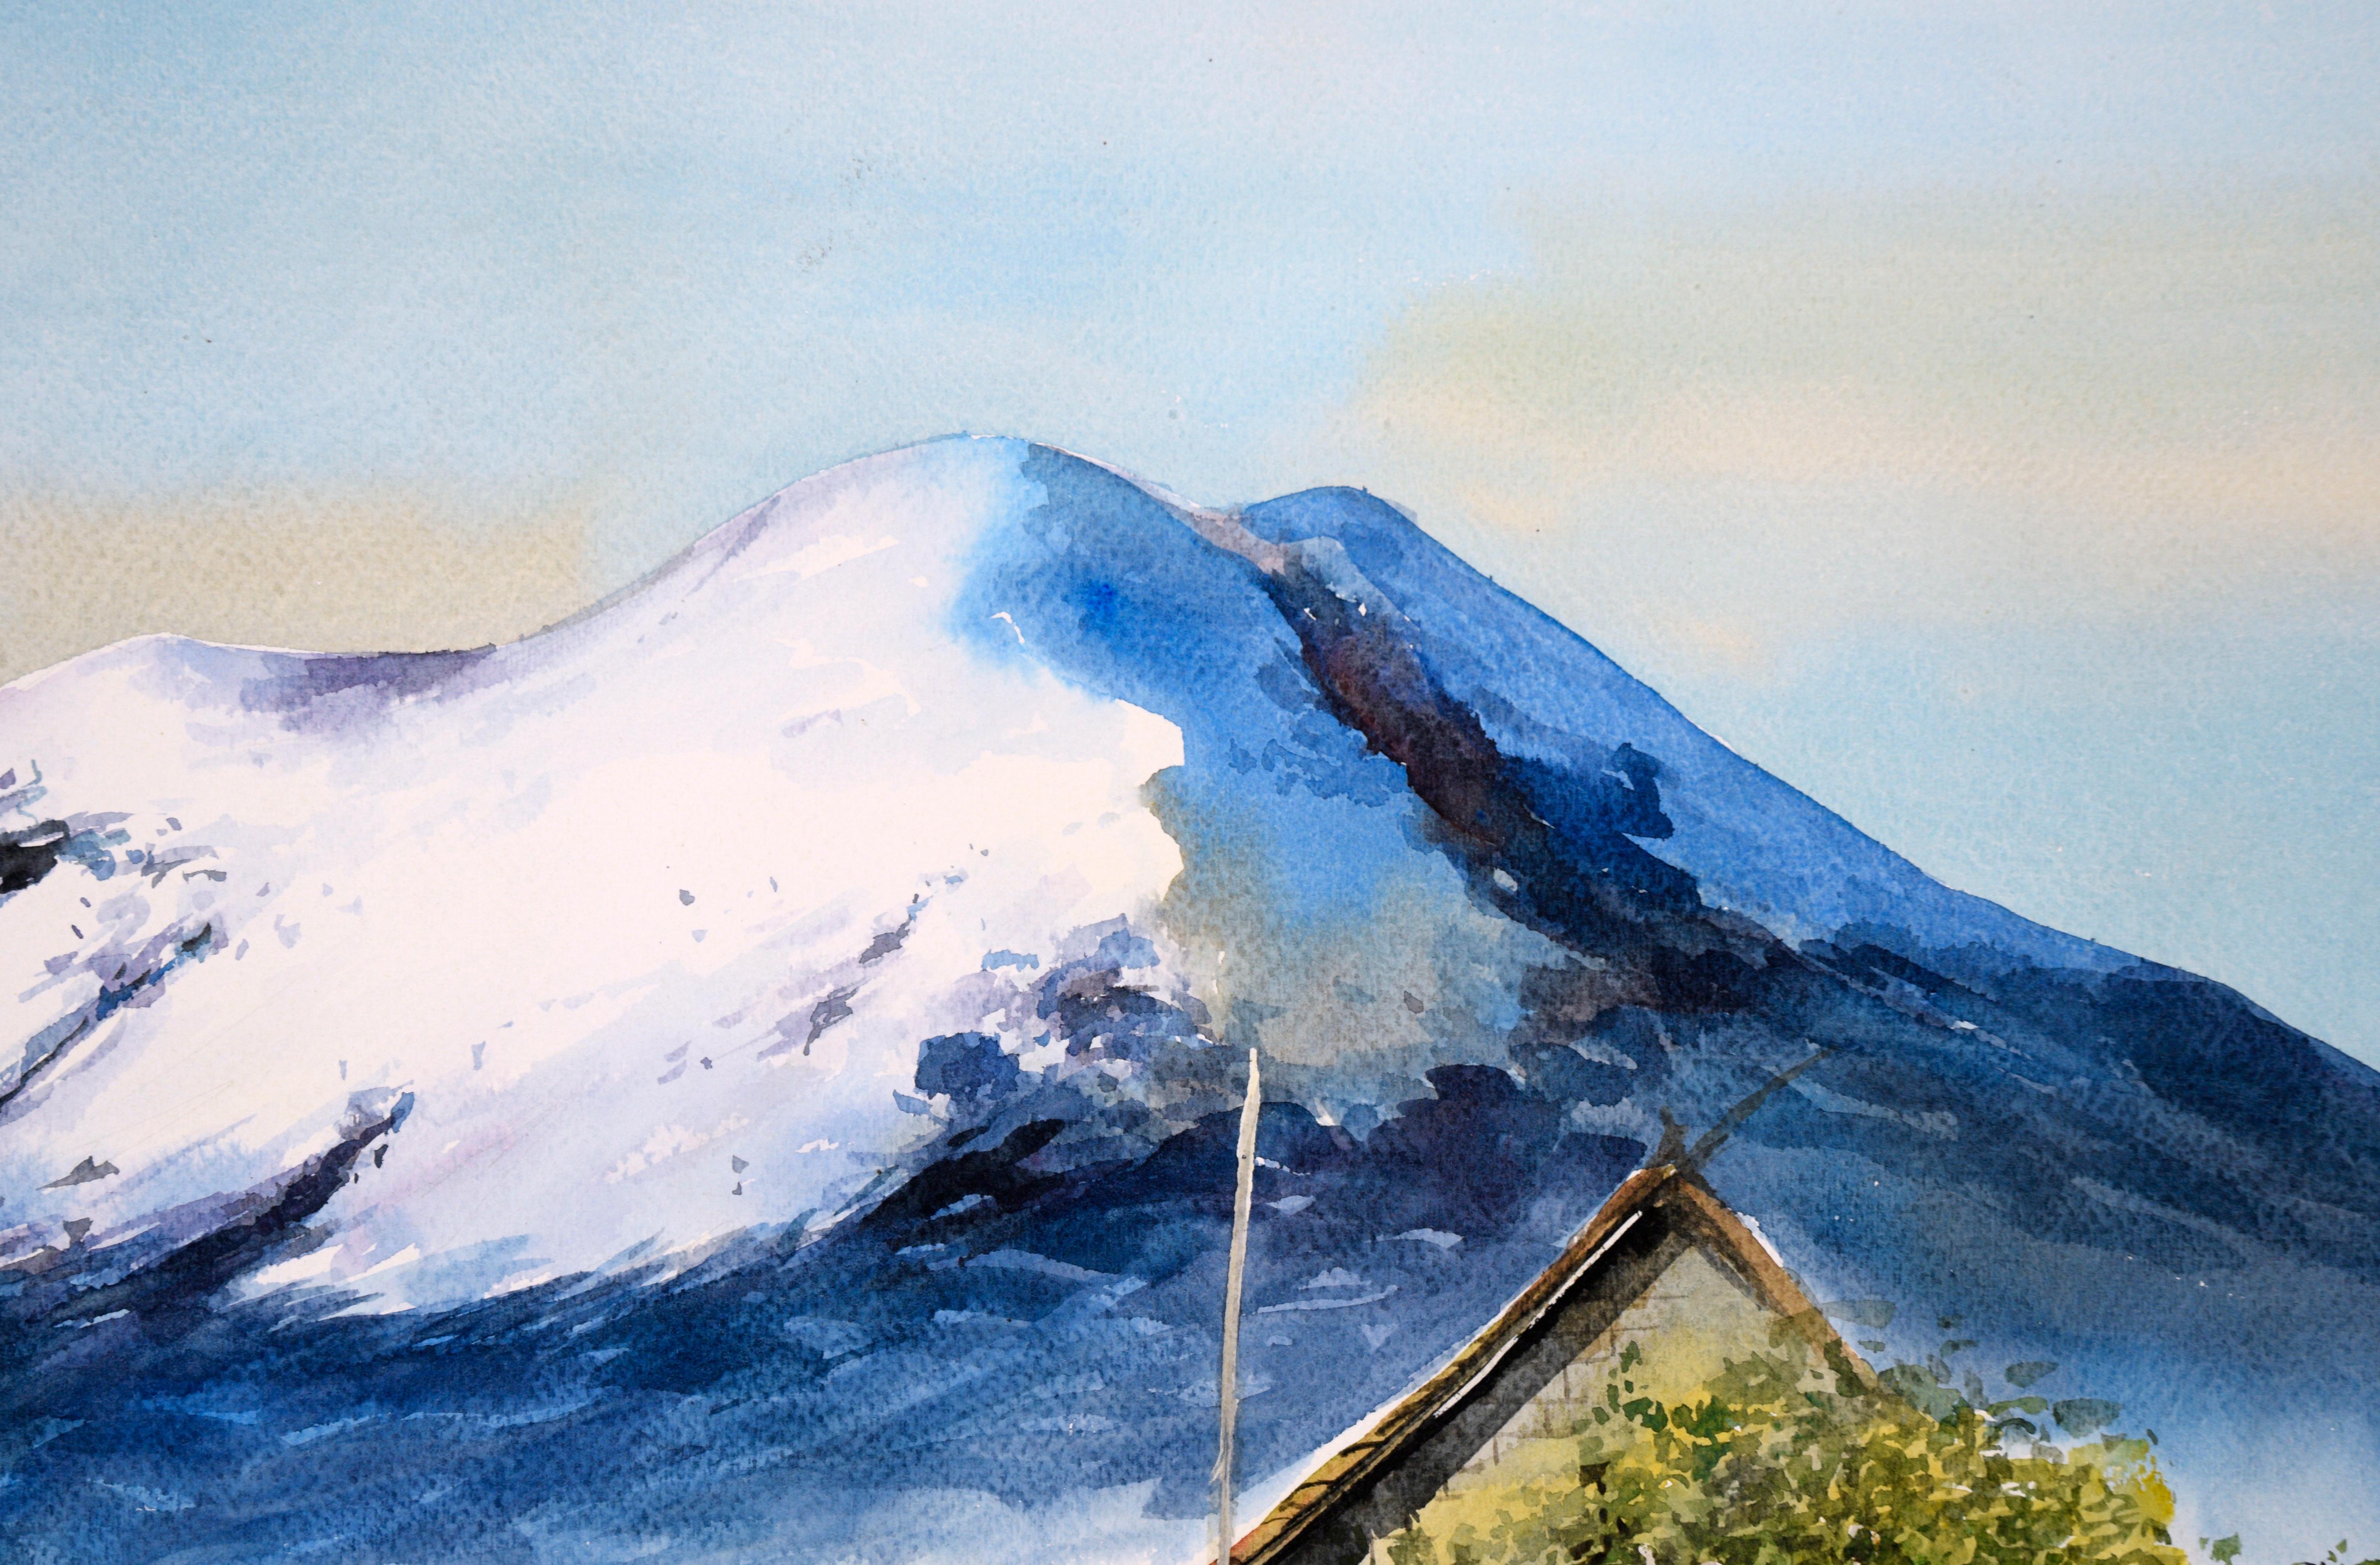 watercolor painting landscape village